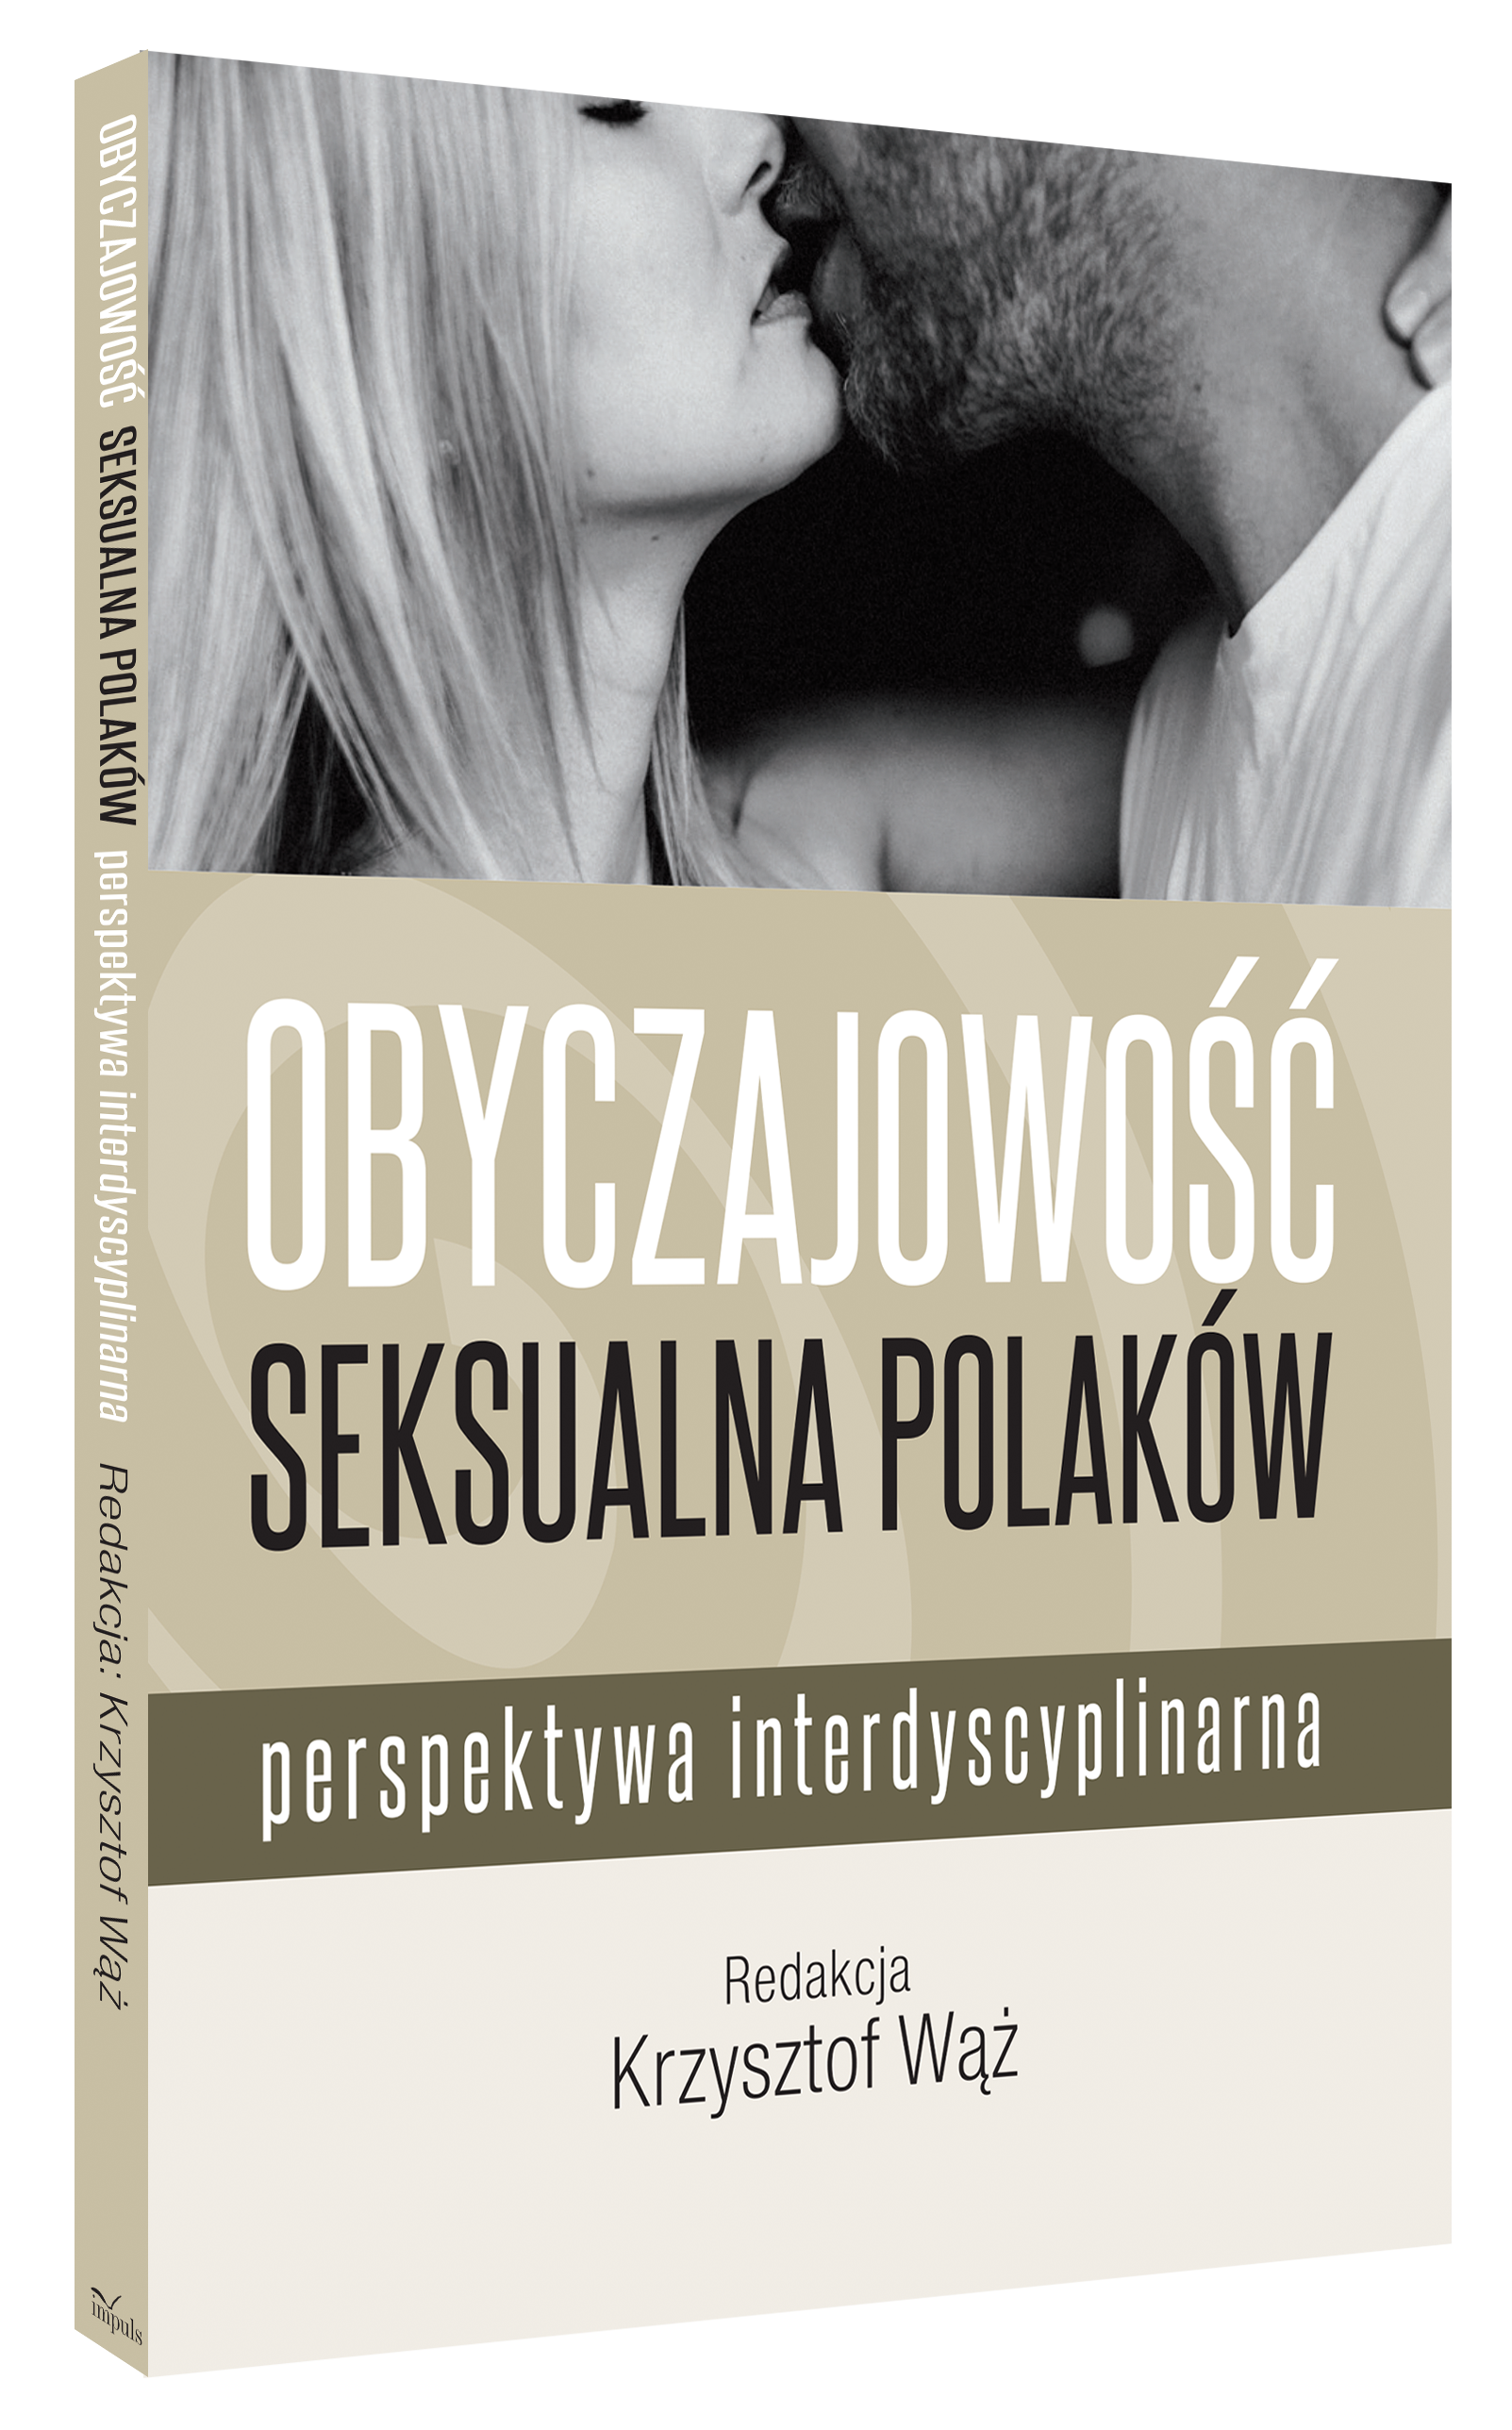 Obyczajowość seksualna Polaków 